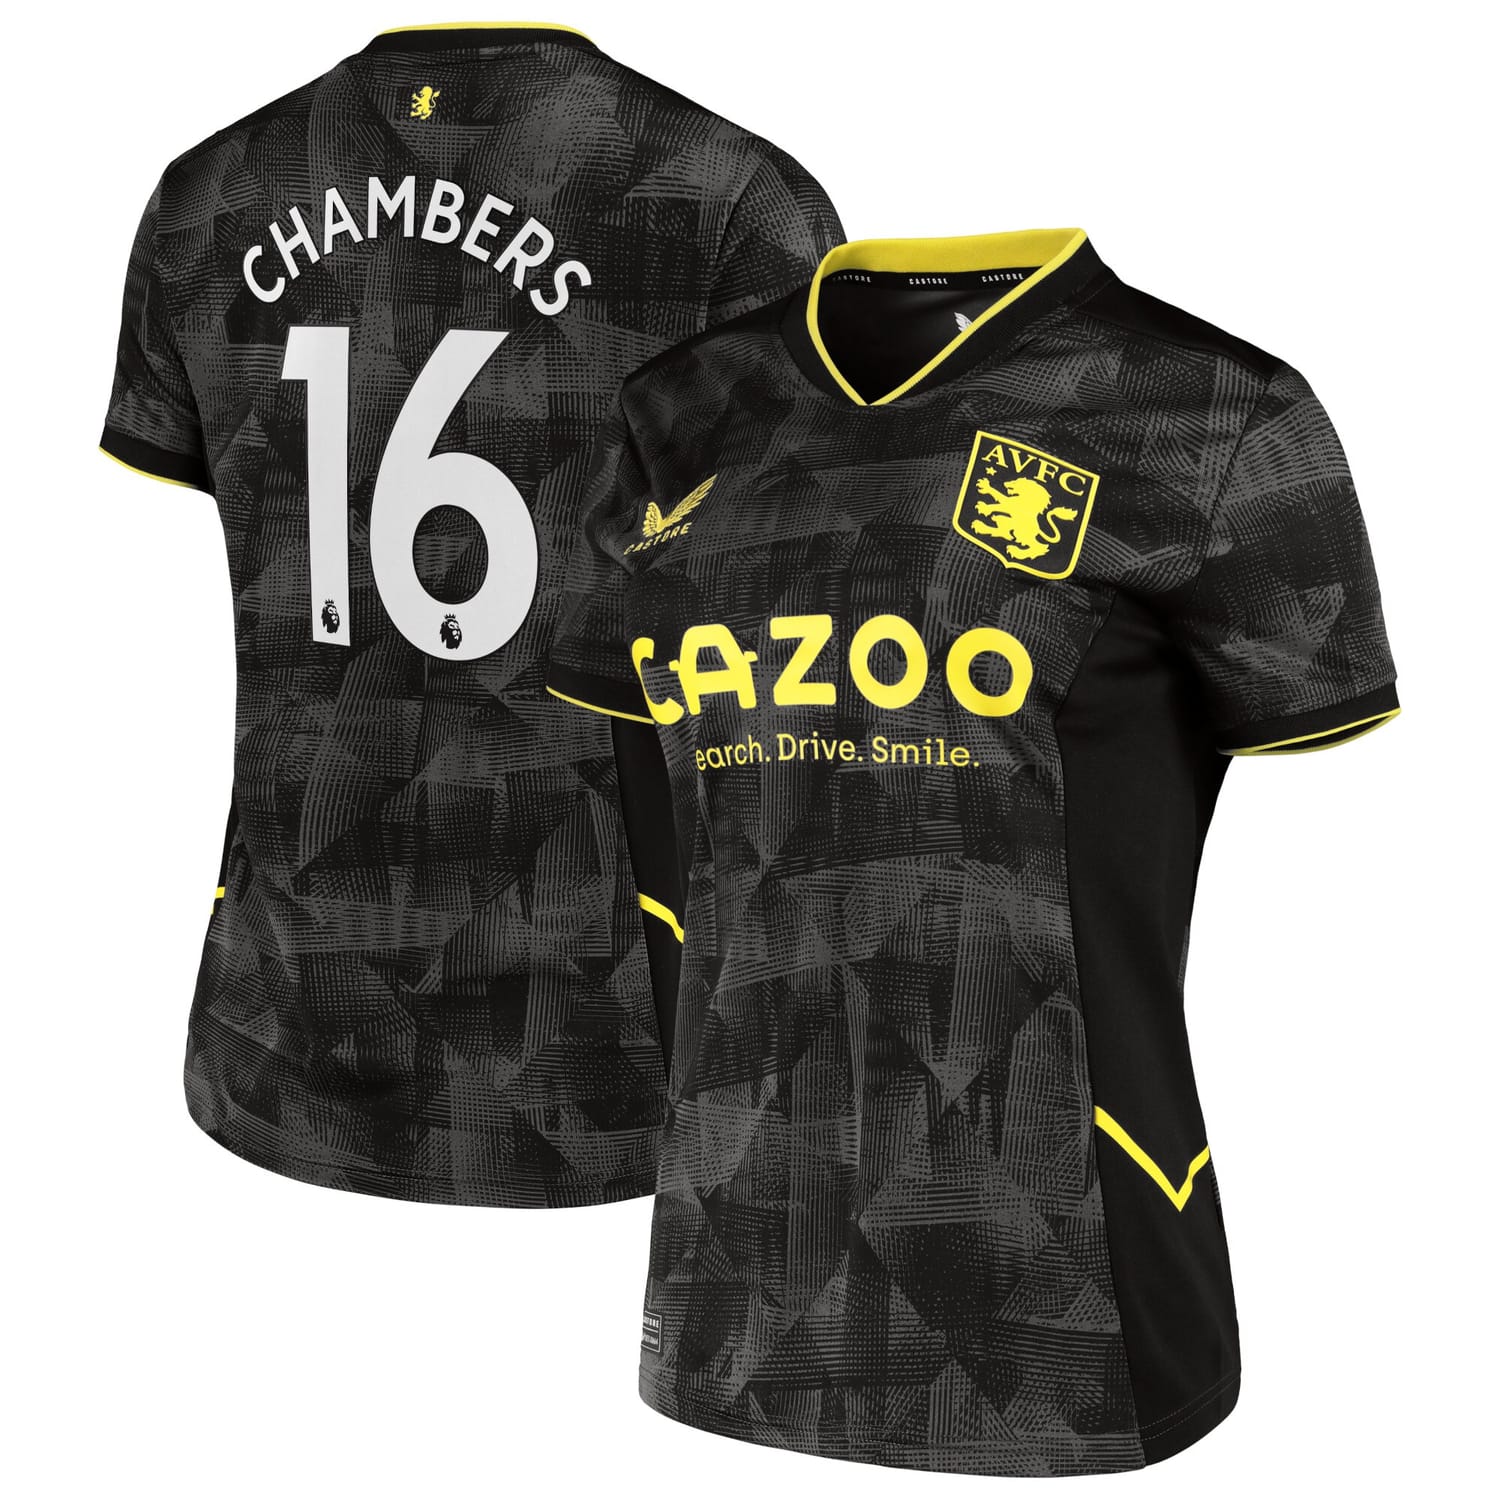 Premier League Aston Villa Third Jersey Shirt 2022-23 player Calum Chambers 16 printing for Women